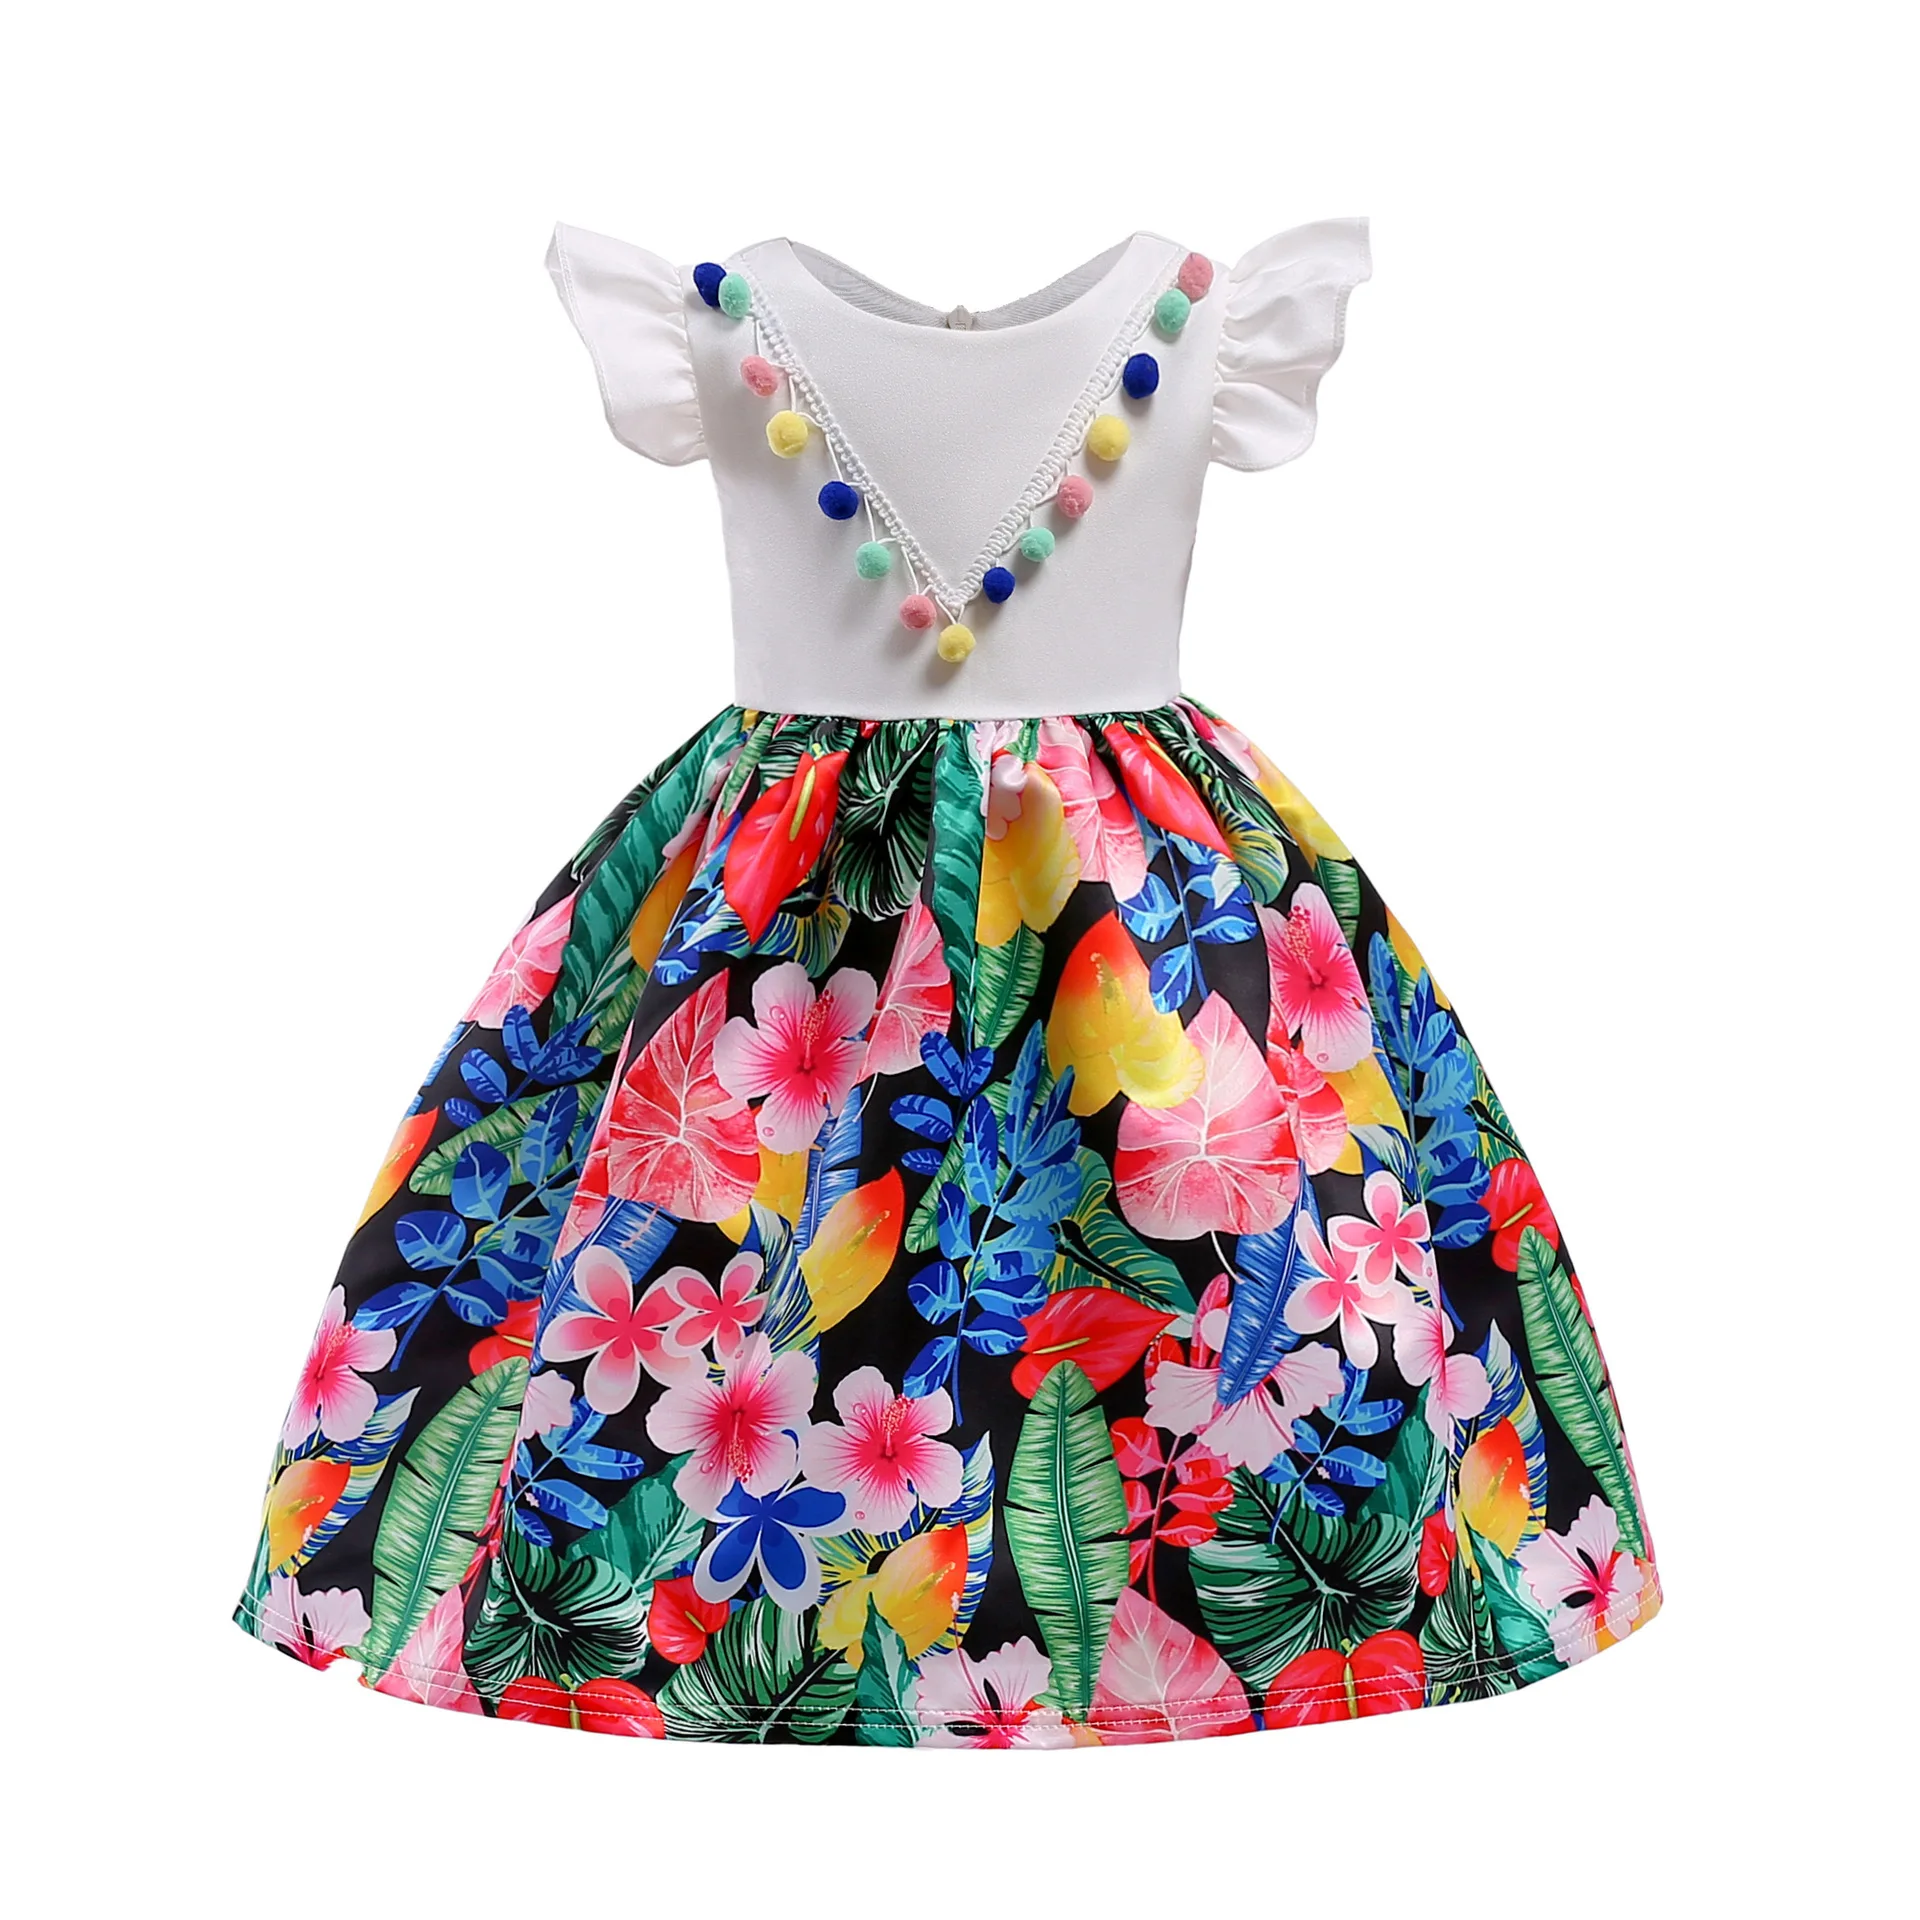 Летнее платье с цветочным рисунком костюм принцессы для девочек, платья праздничная одежда для девочек детское платье из тюля для выпускного вечера, Vestido, торжественное платье для детей от 2 до 10 лет - Цвет: as the picture